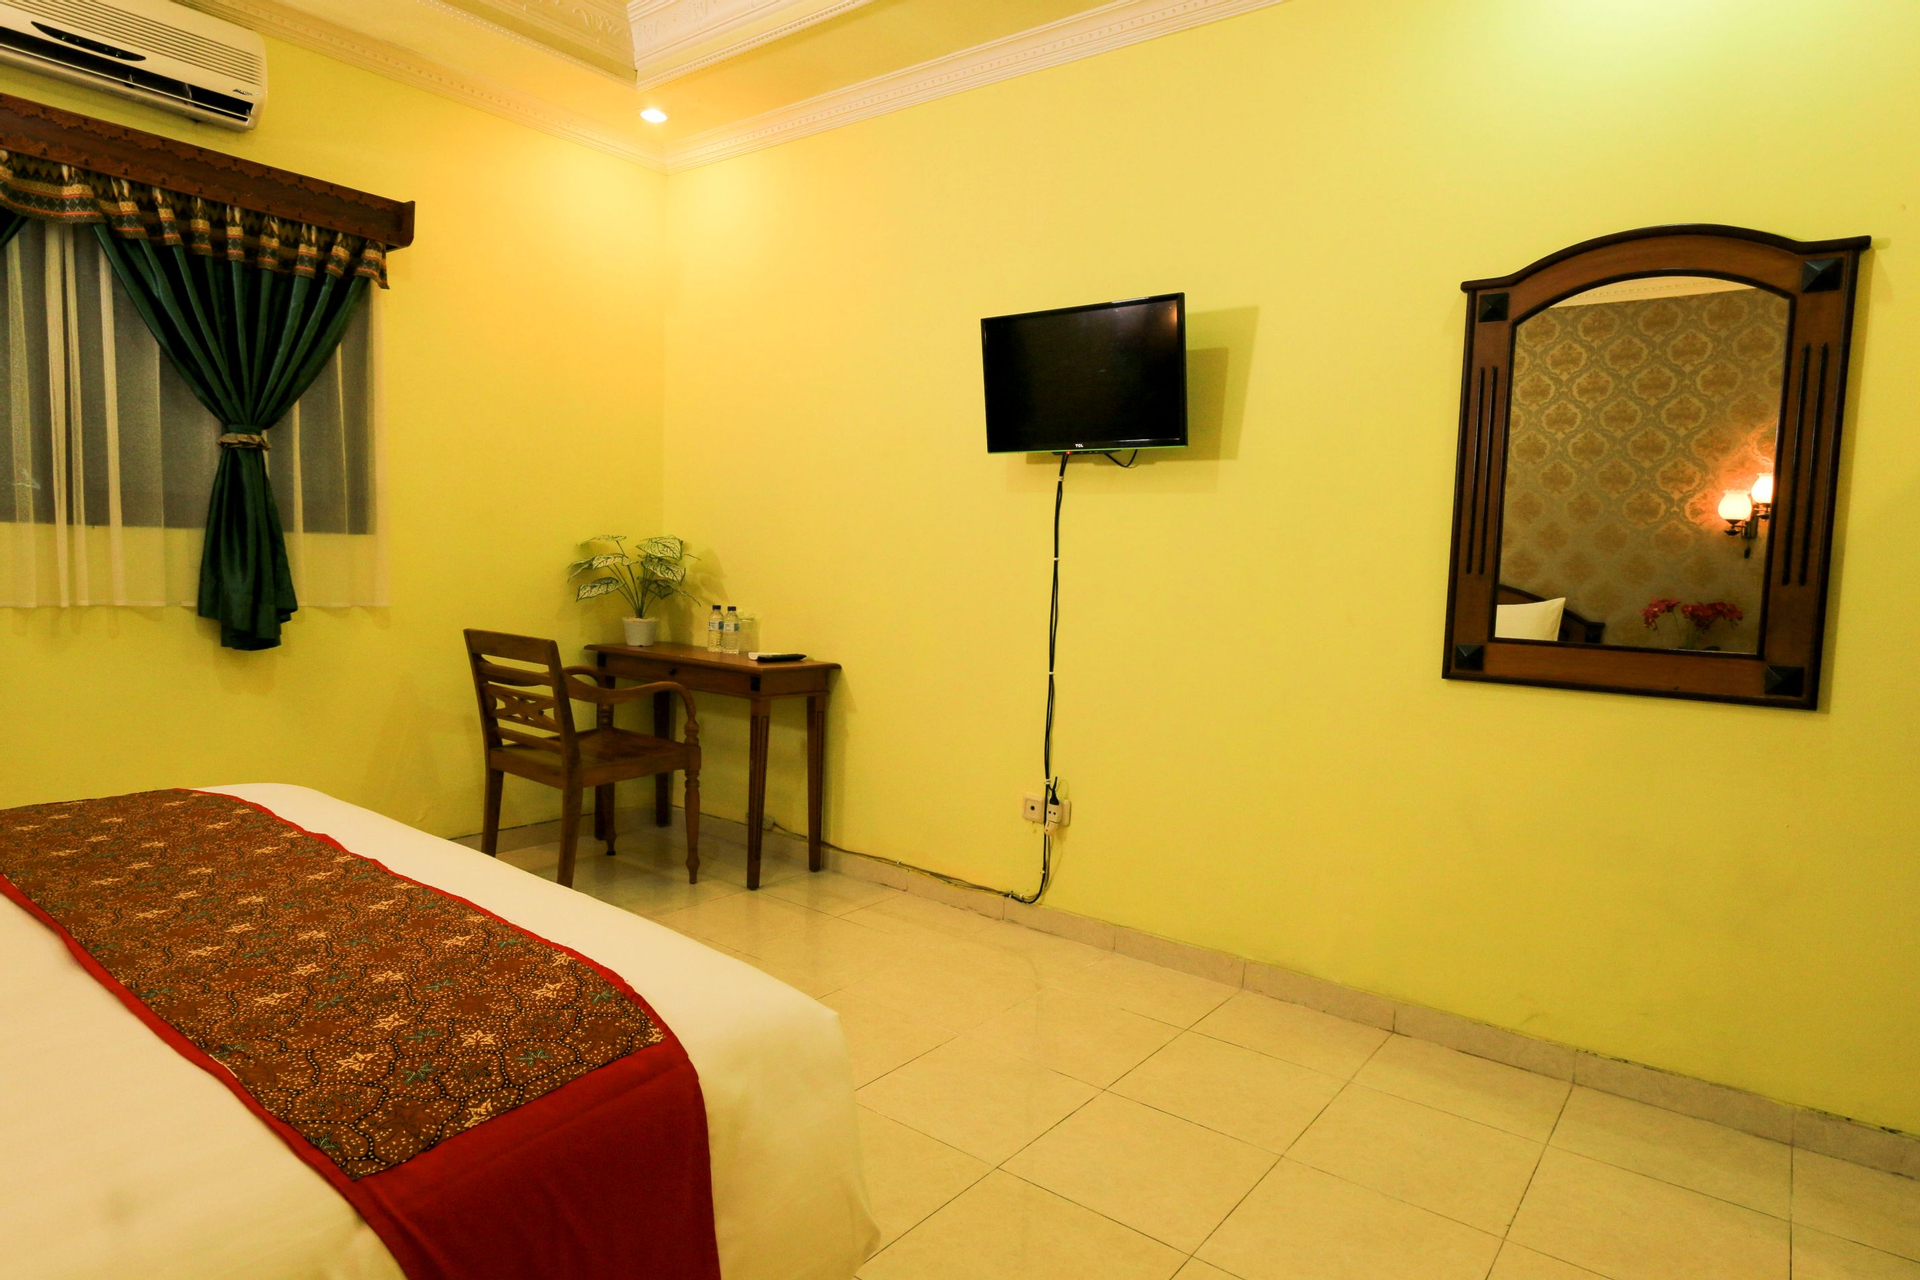 Bedroom 4, Tjiptorini Jaya Hotel, Yogyakarta